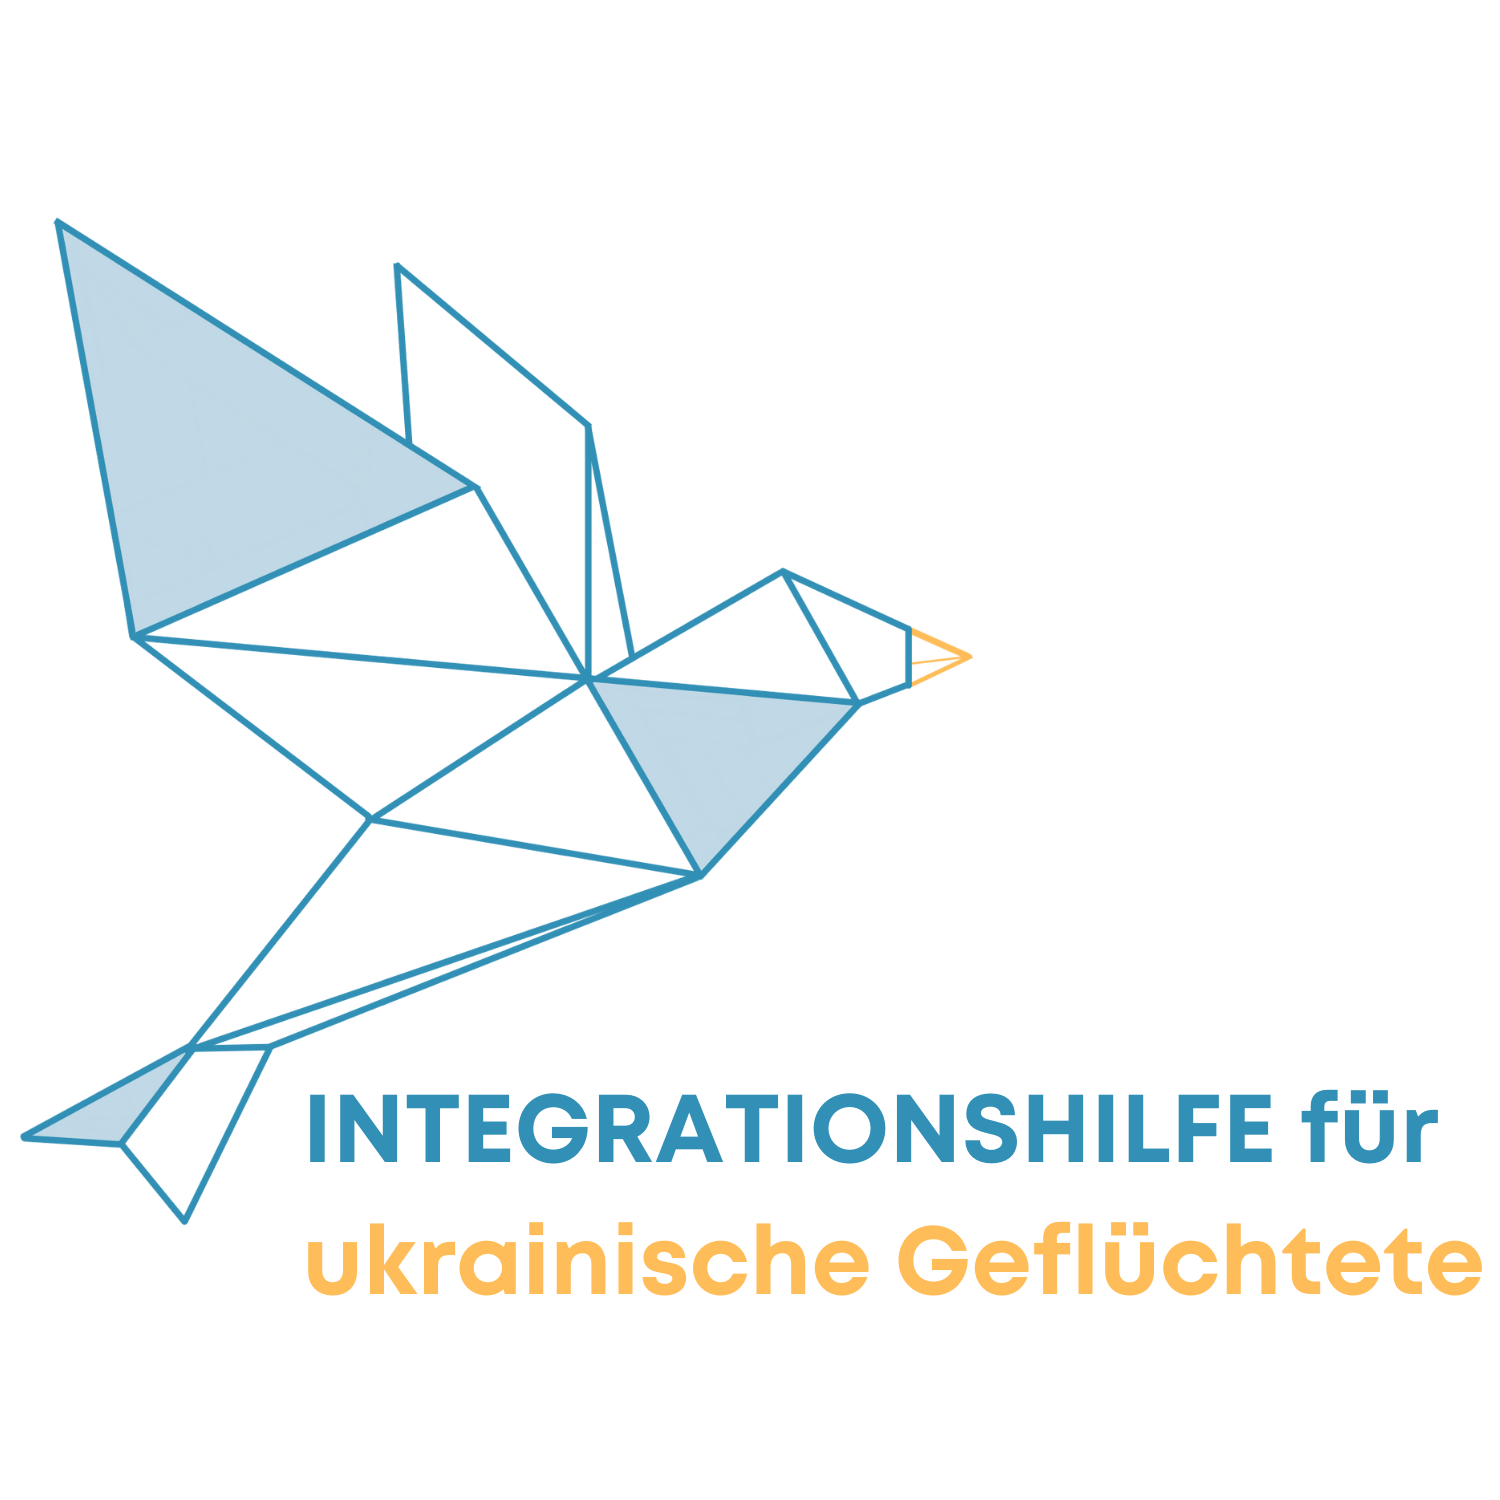 01.08.2022-Logo-Integrationshilfe-fur-Gefluchtete-weiss-2